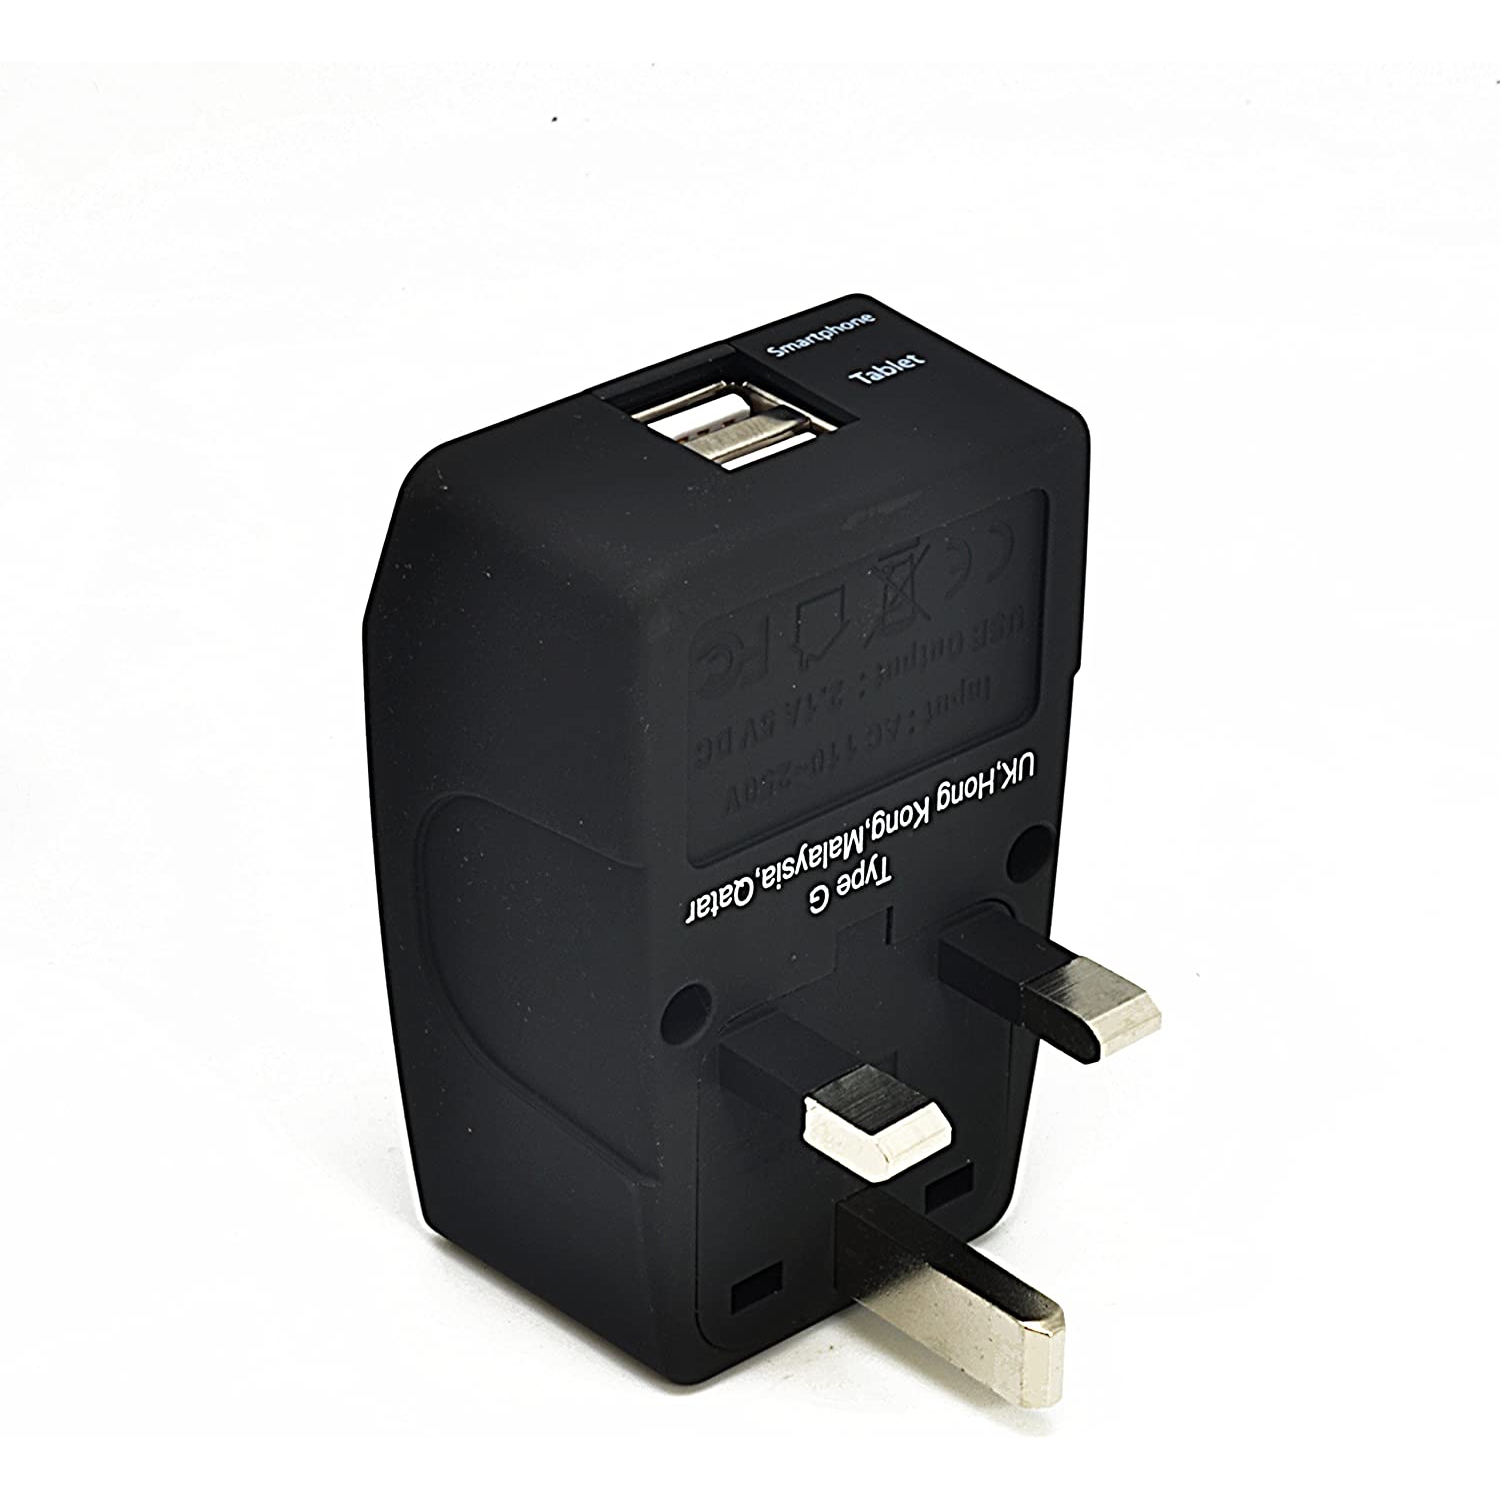 2 – Adaptateur de voyage USB UK, prise d'alimentation 4-en-1 (type